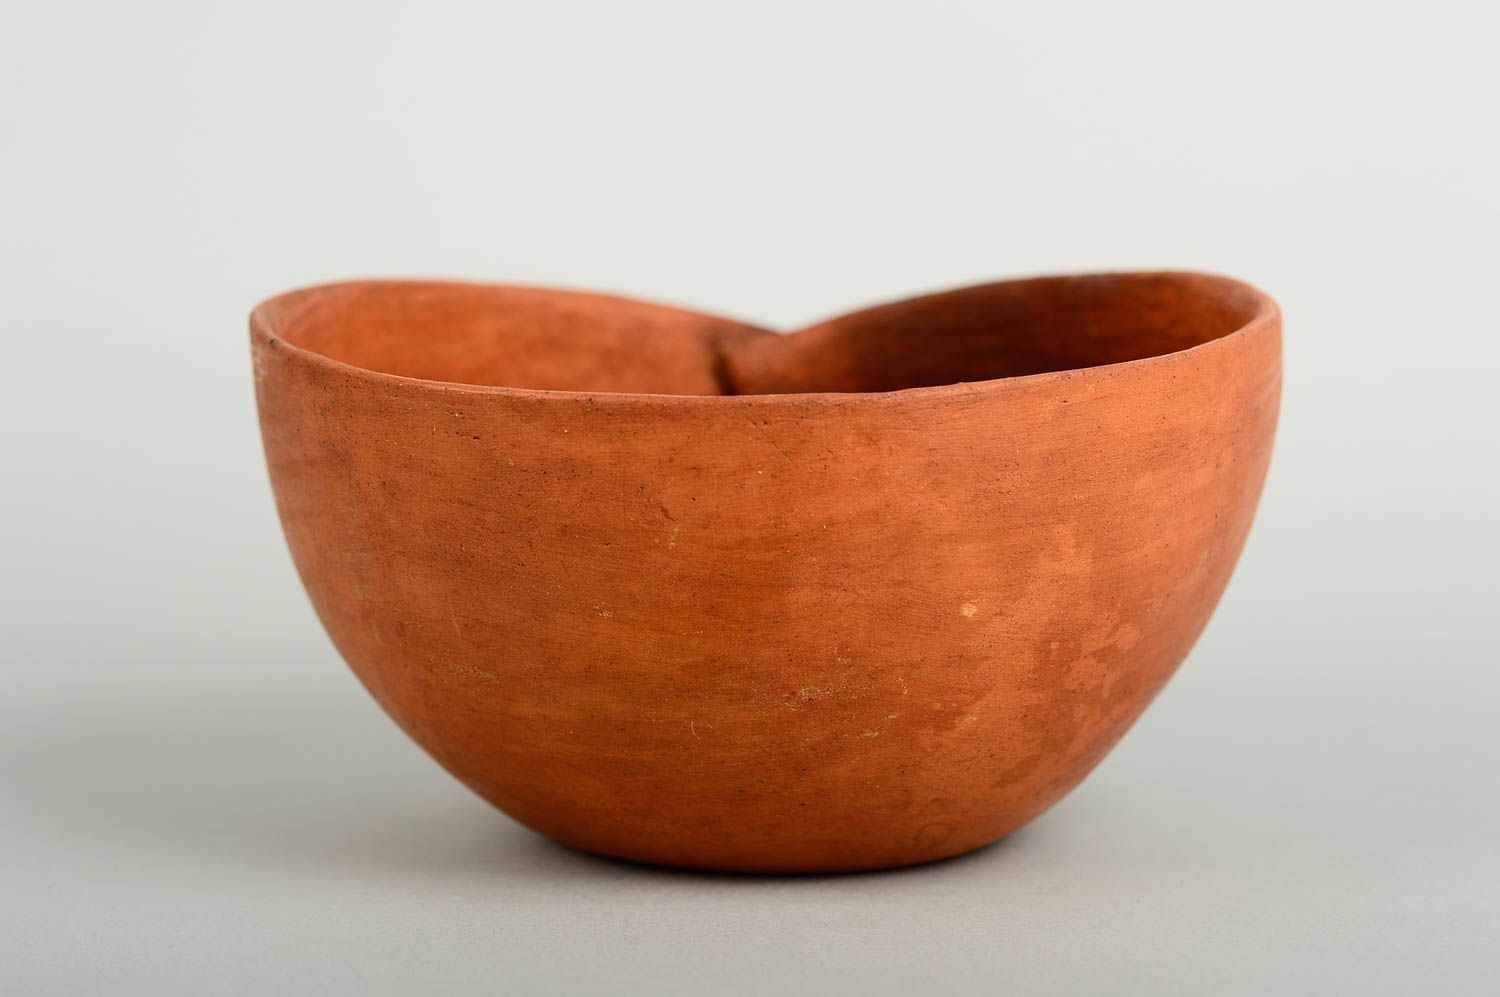 Handmade ceramic bowl 3 pieces home ceramics home goods table setting ideas photo 1